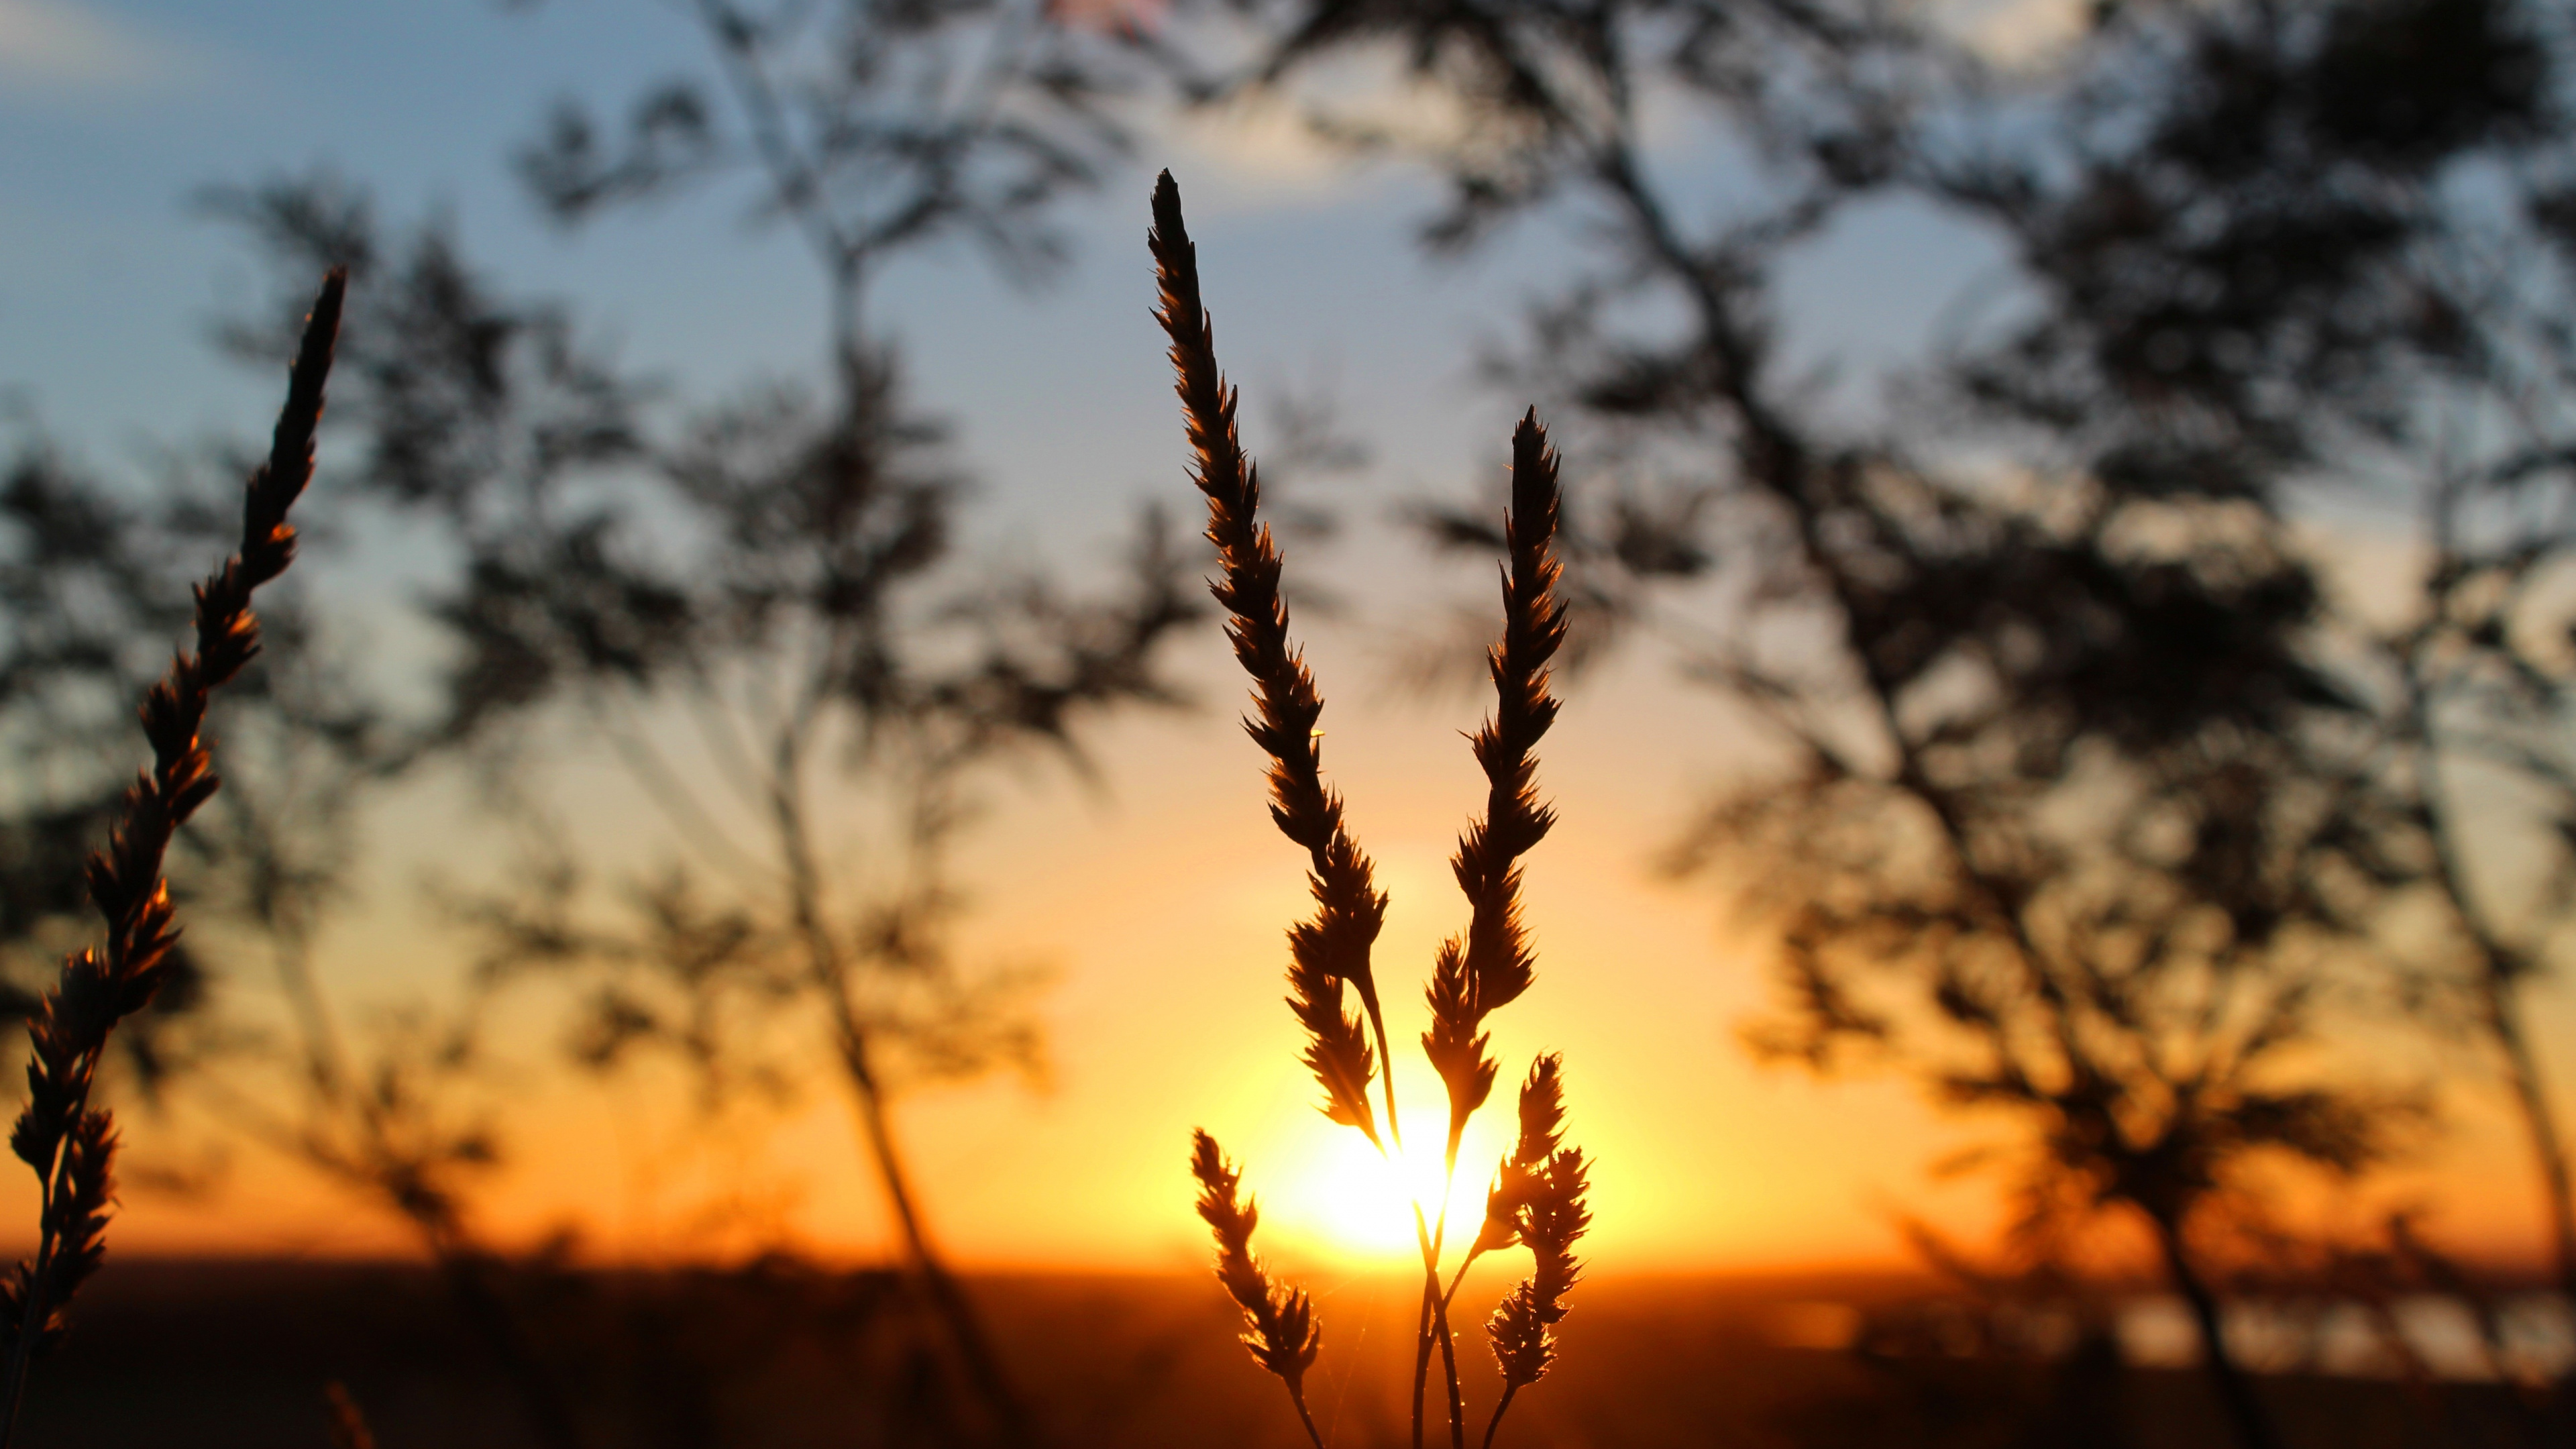 Sunset, Sunlight, Sunrise, Grasses, Dusk. Wallpaper in 3840x2160 Resolution